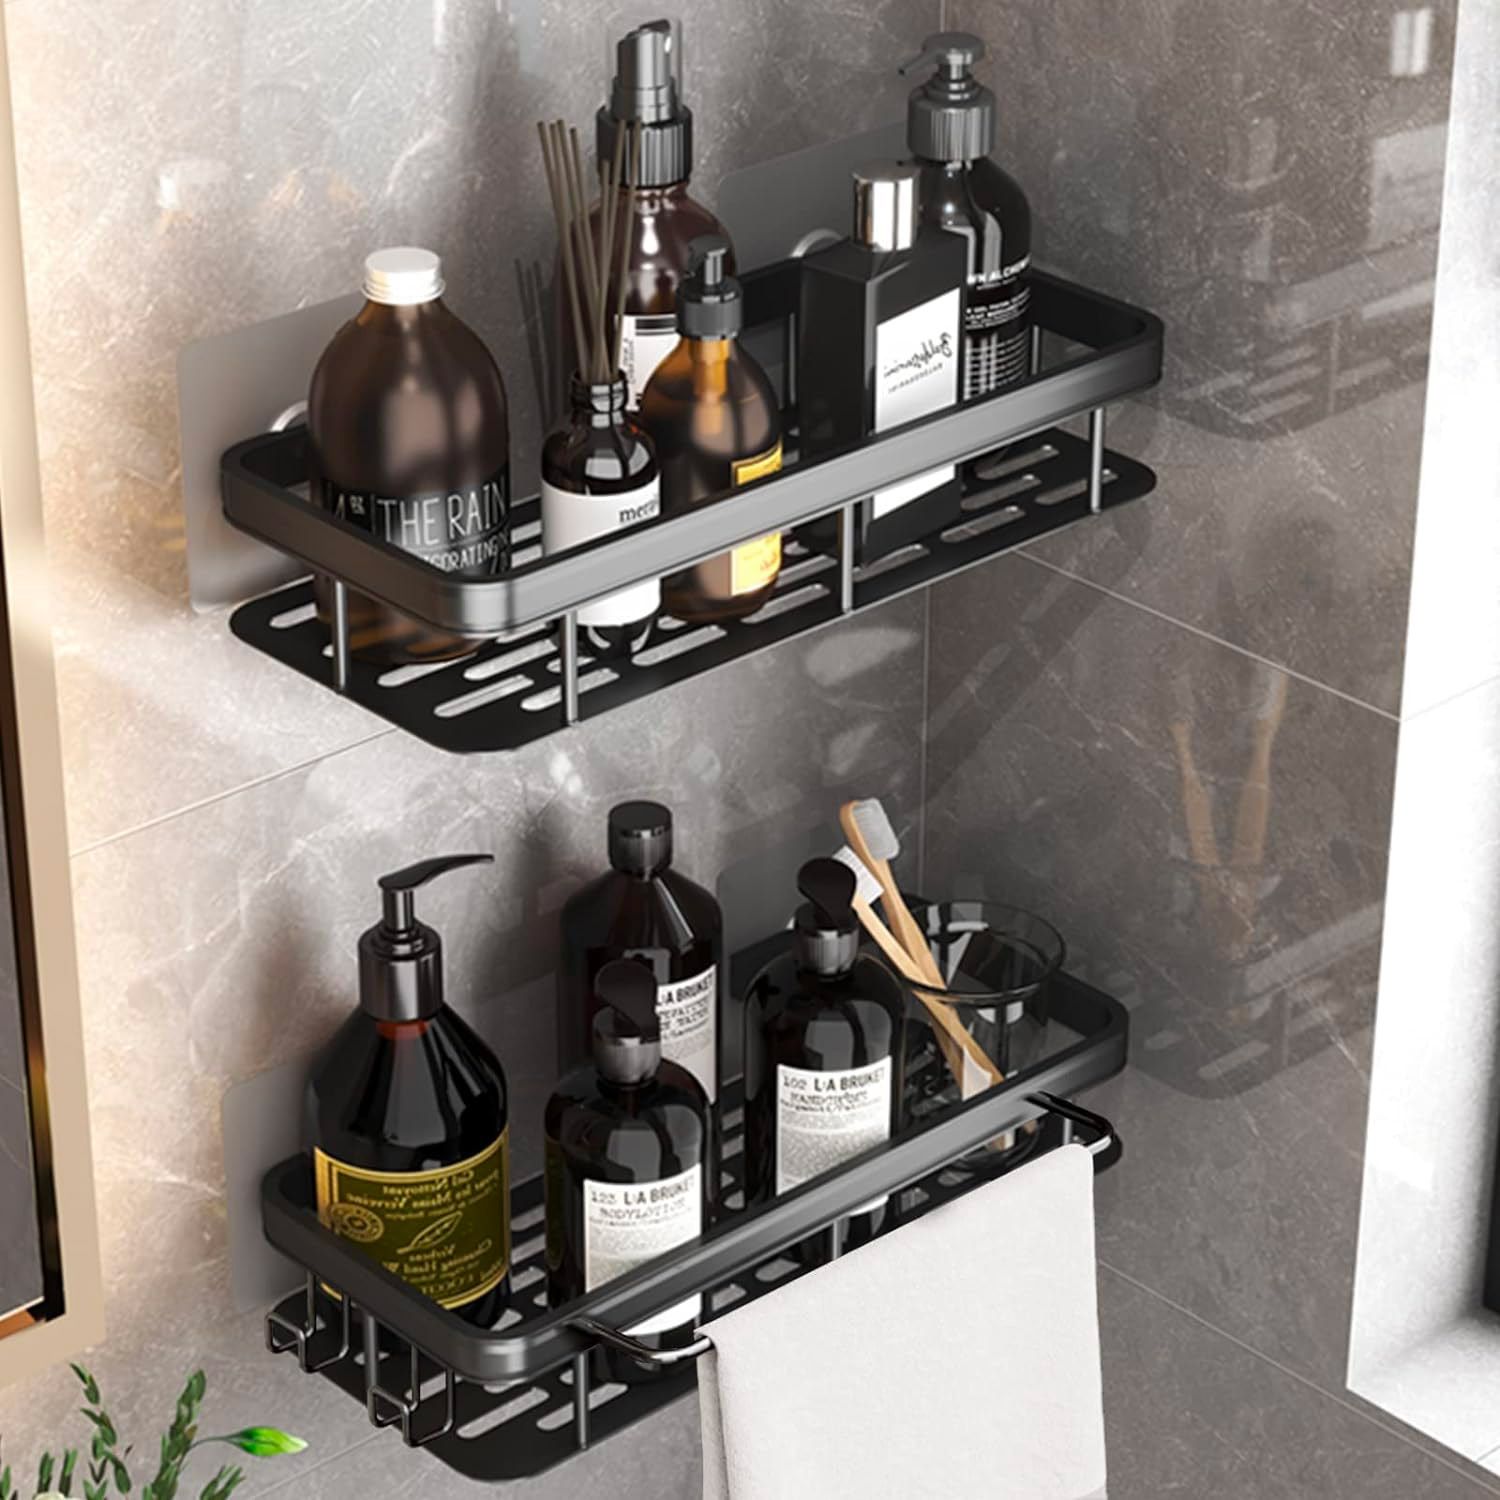 IKEA: 10 productos prácticos que te permitirán ganar espacio en el baño